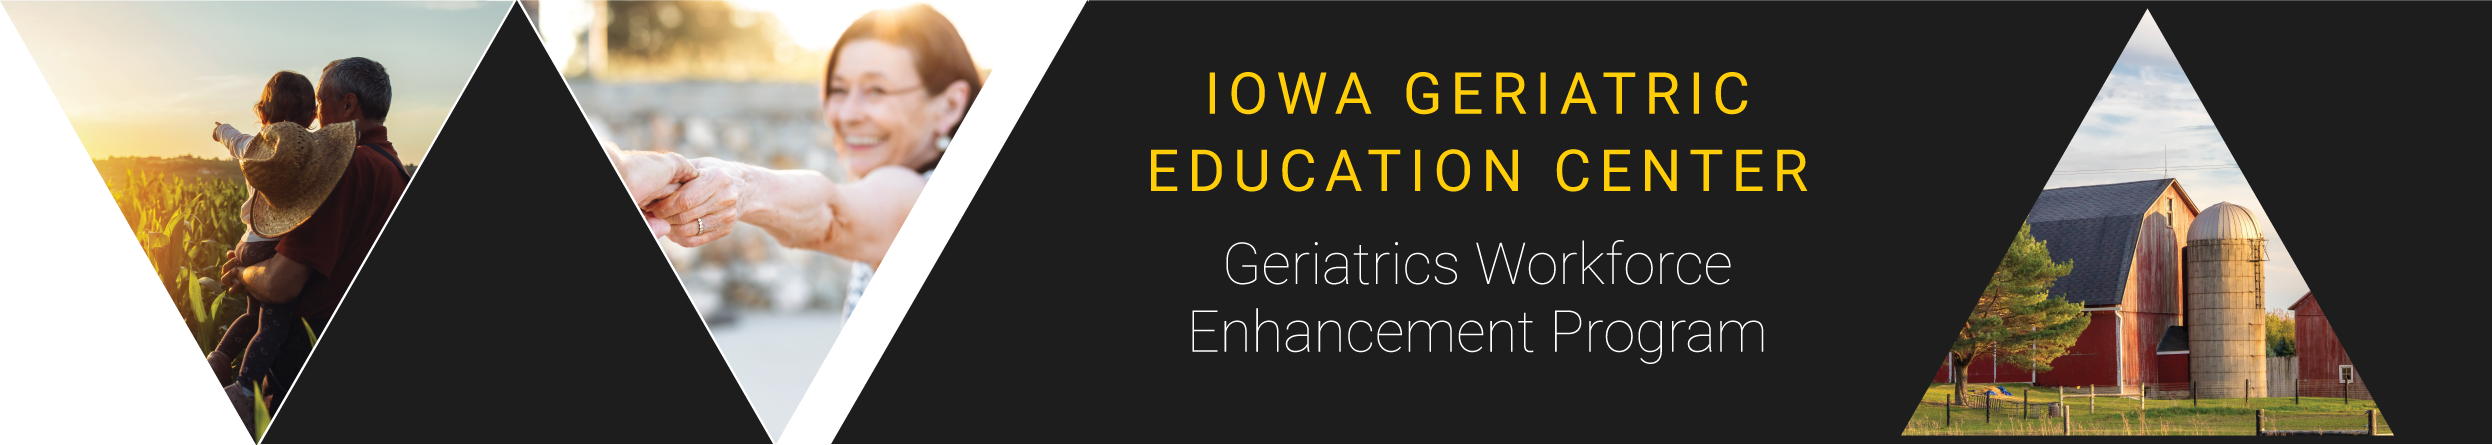 Iowa Geriatric Education Center